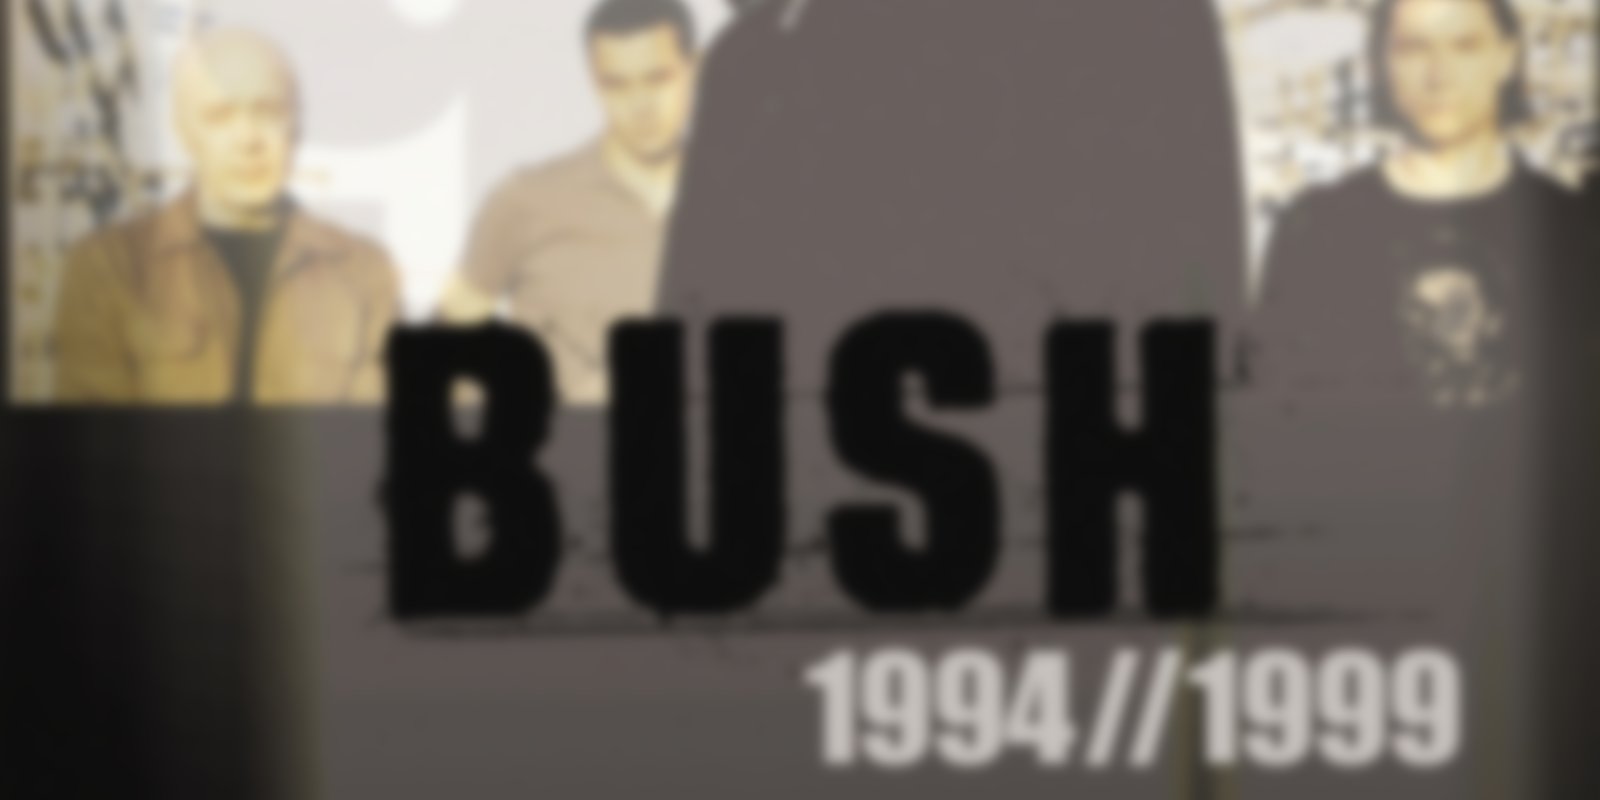 Bush - 1994 / 1999